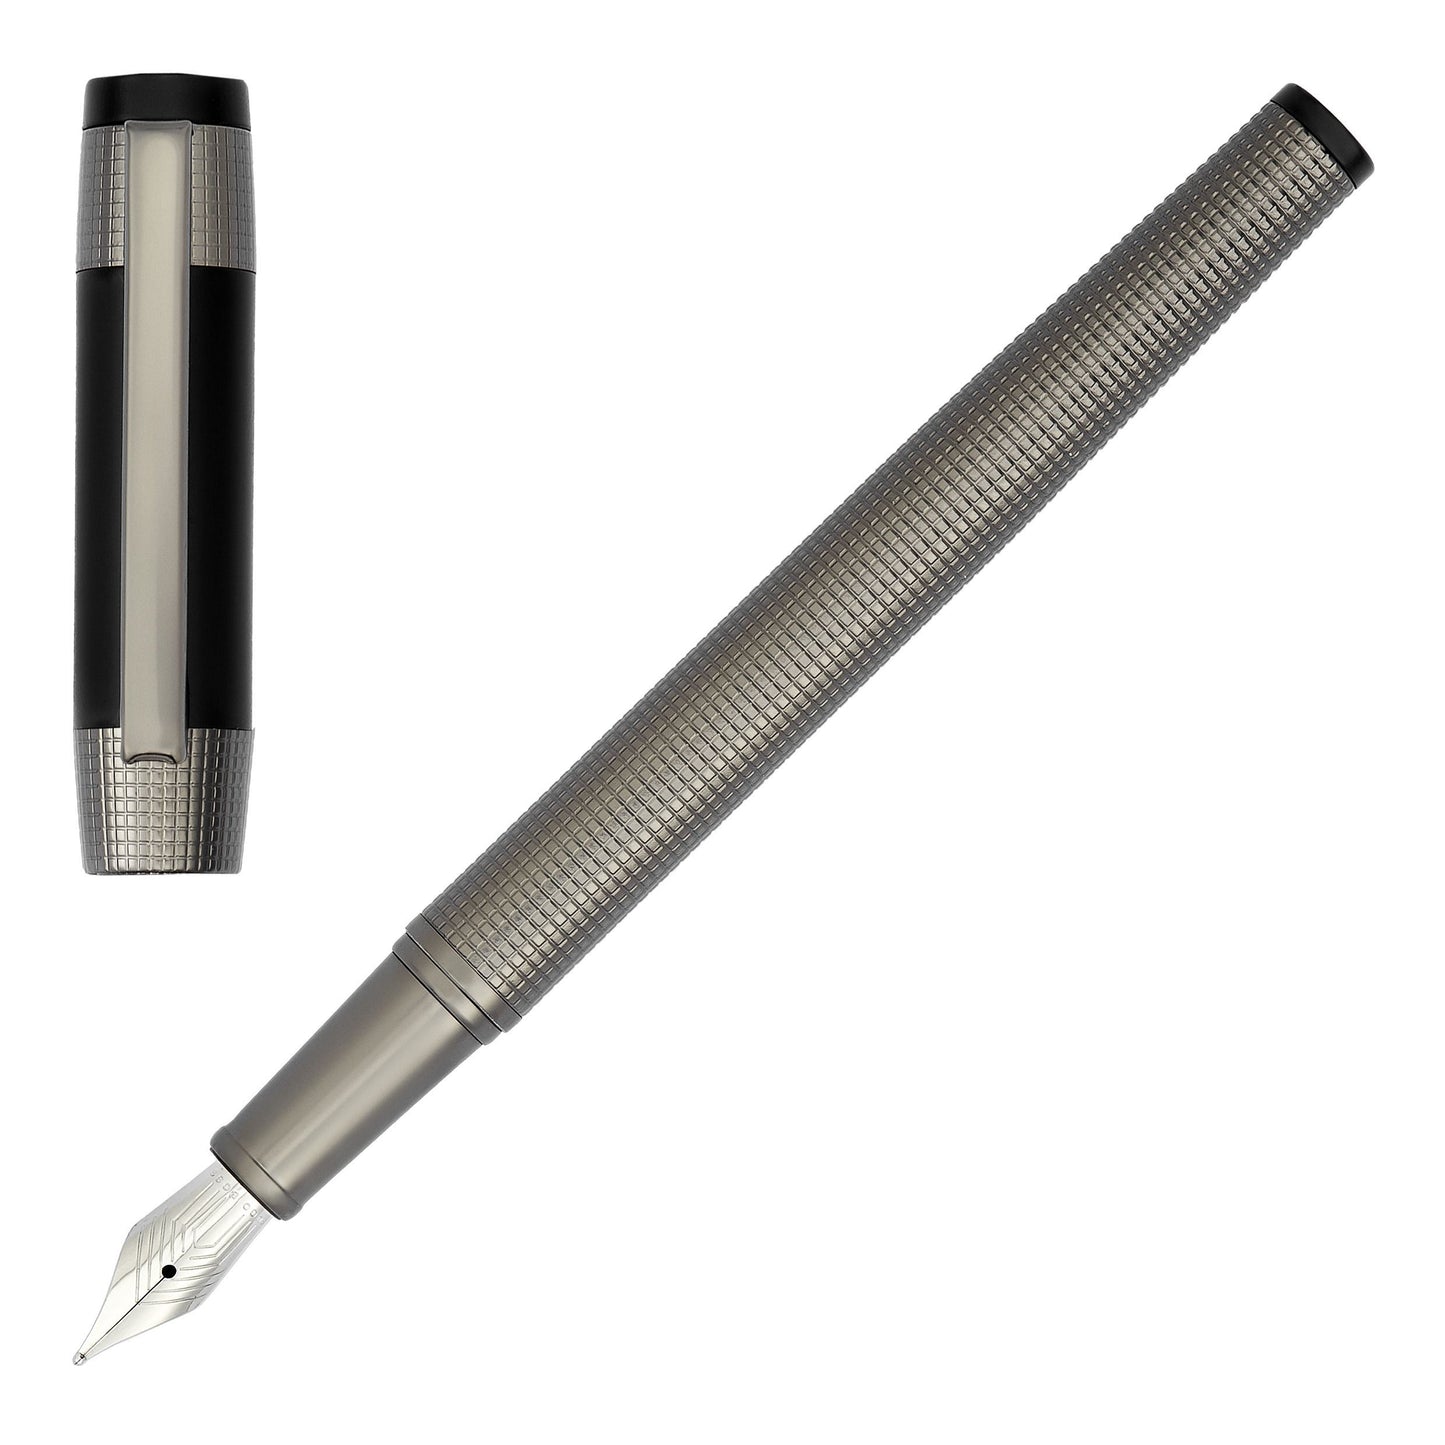 HUGO BOSS HST4962D Πένα Rive Gun Fountain Pen